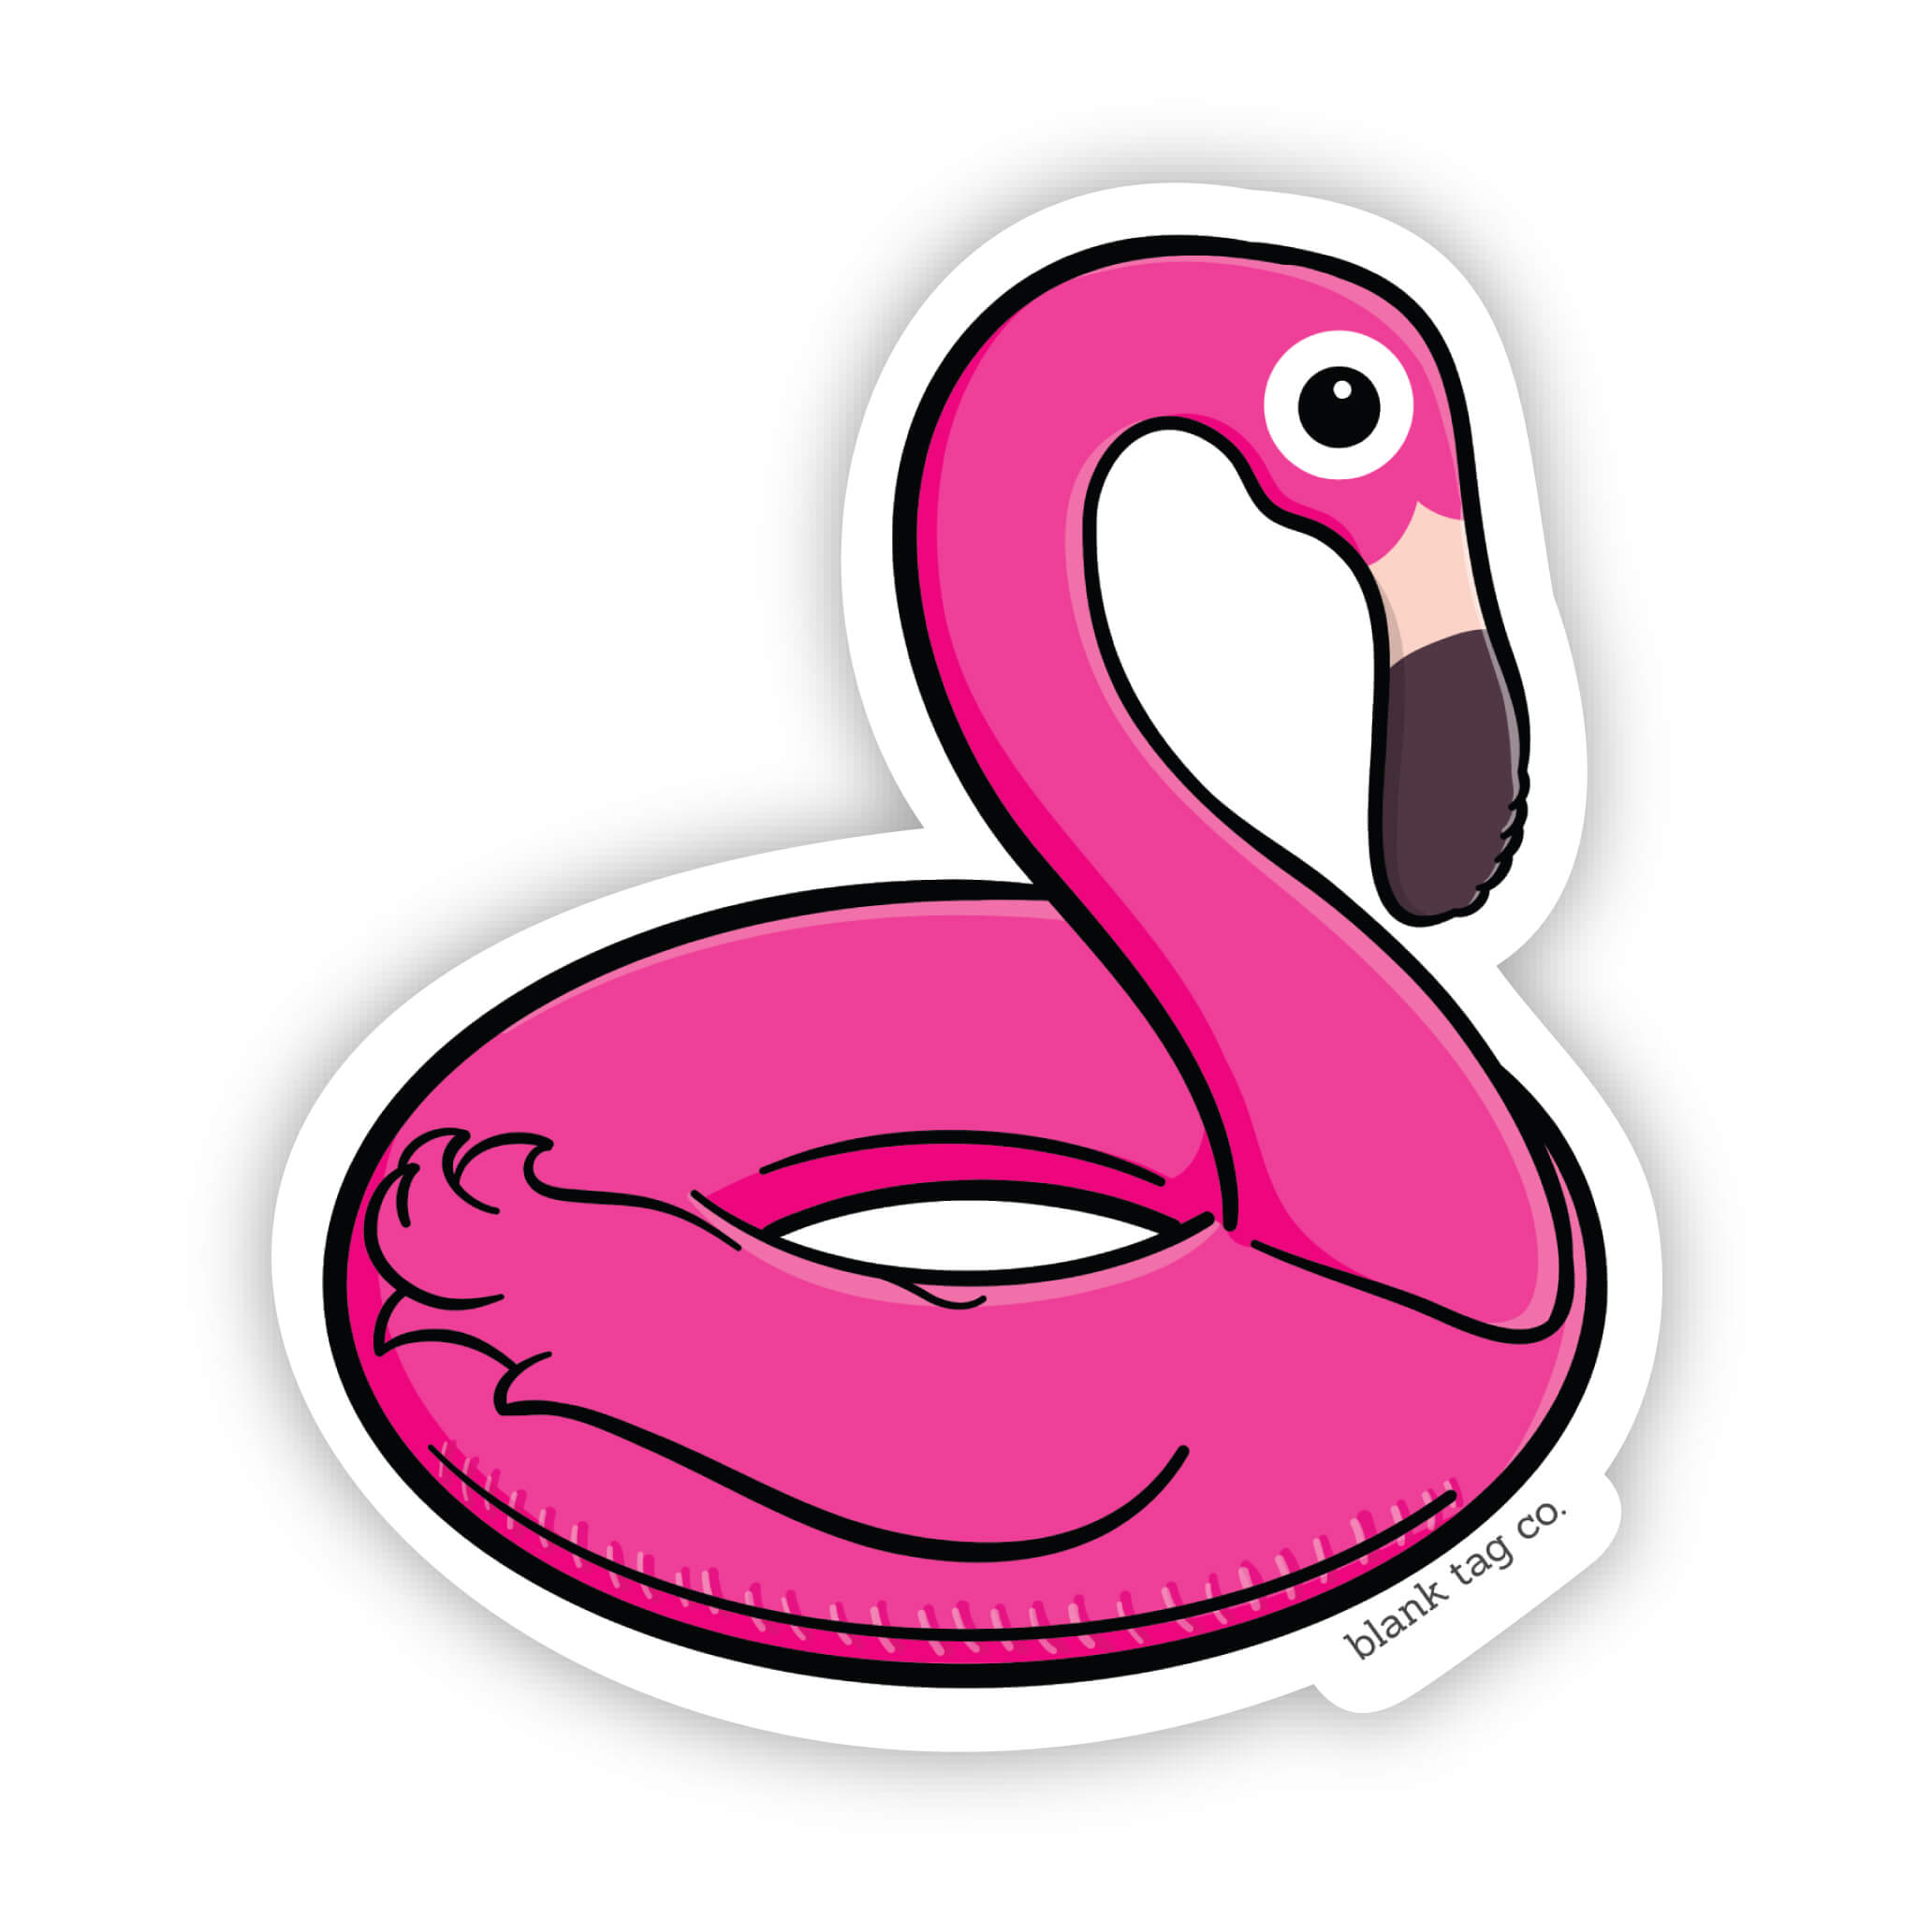 The Flamingo Floaty Sticker